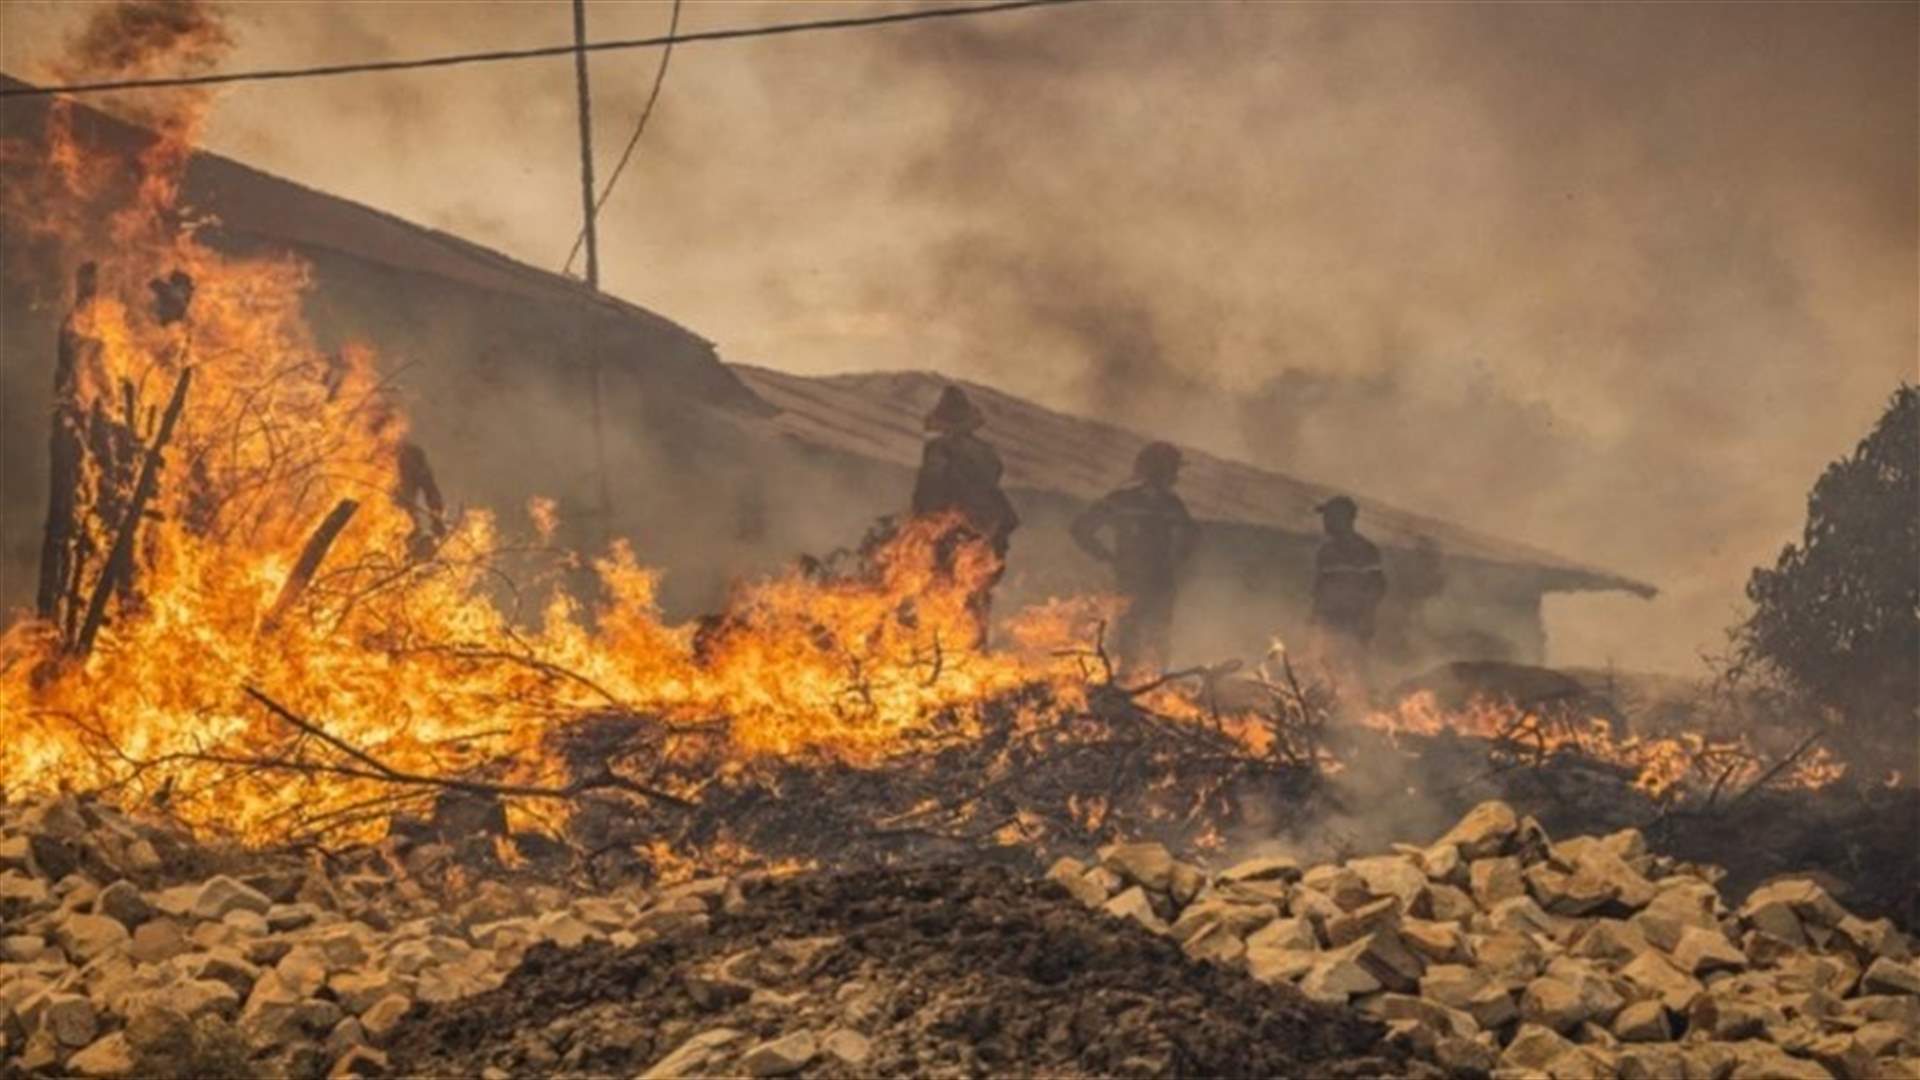 قتيل وجريح في حريق غابات في المغرب